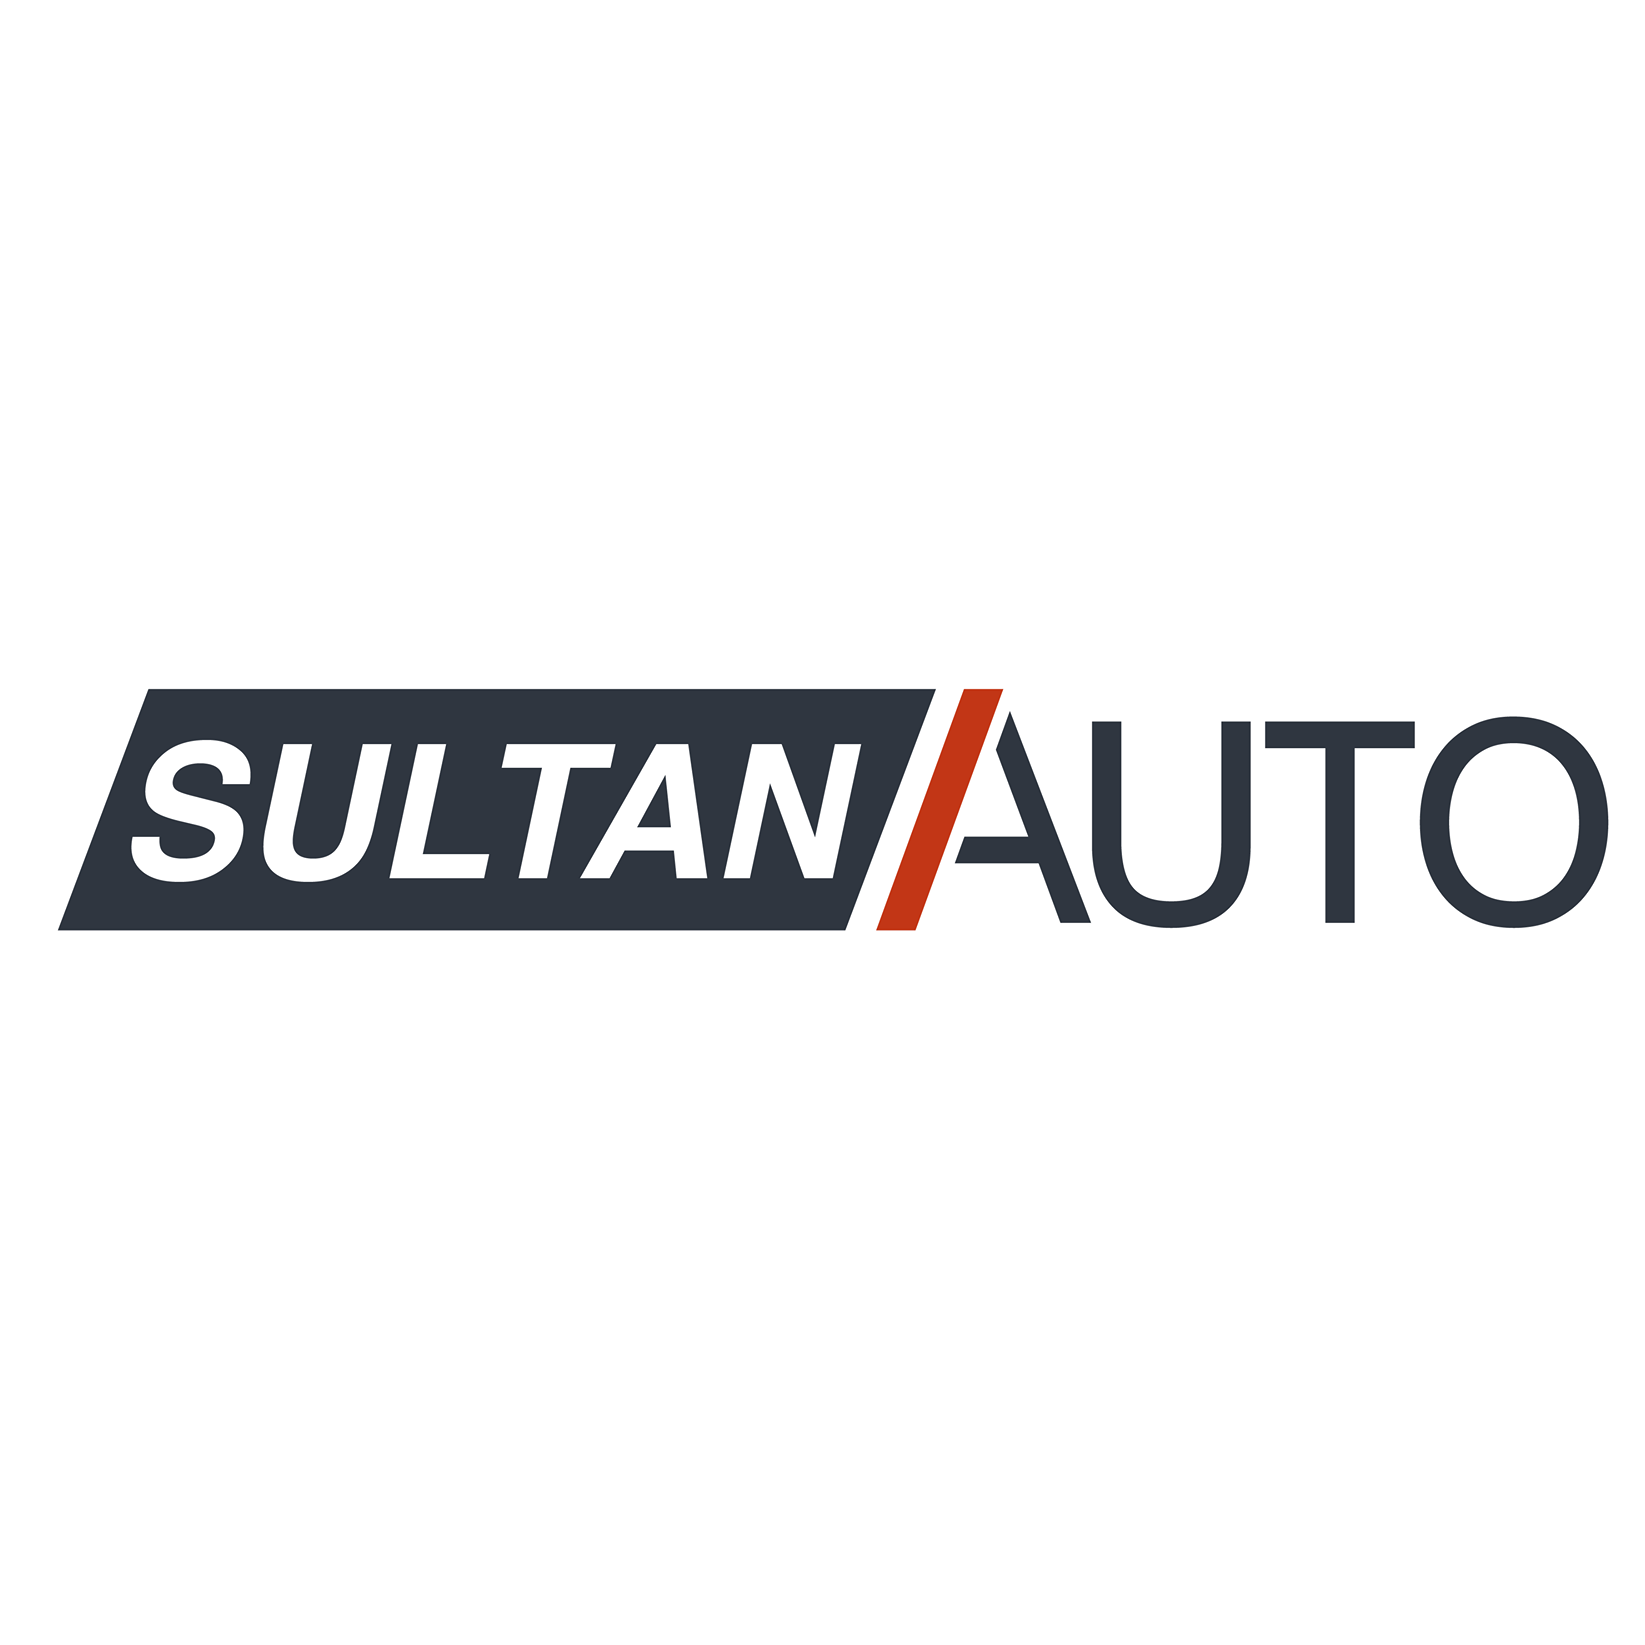 Annuaire Sultan Auto